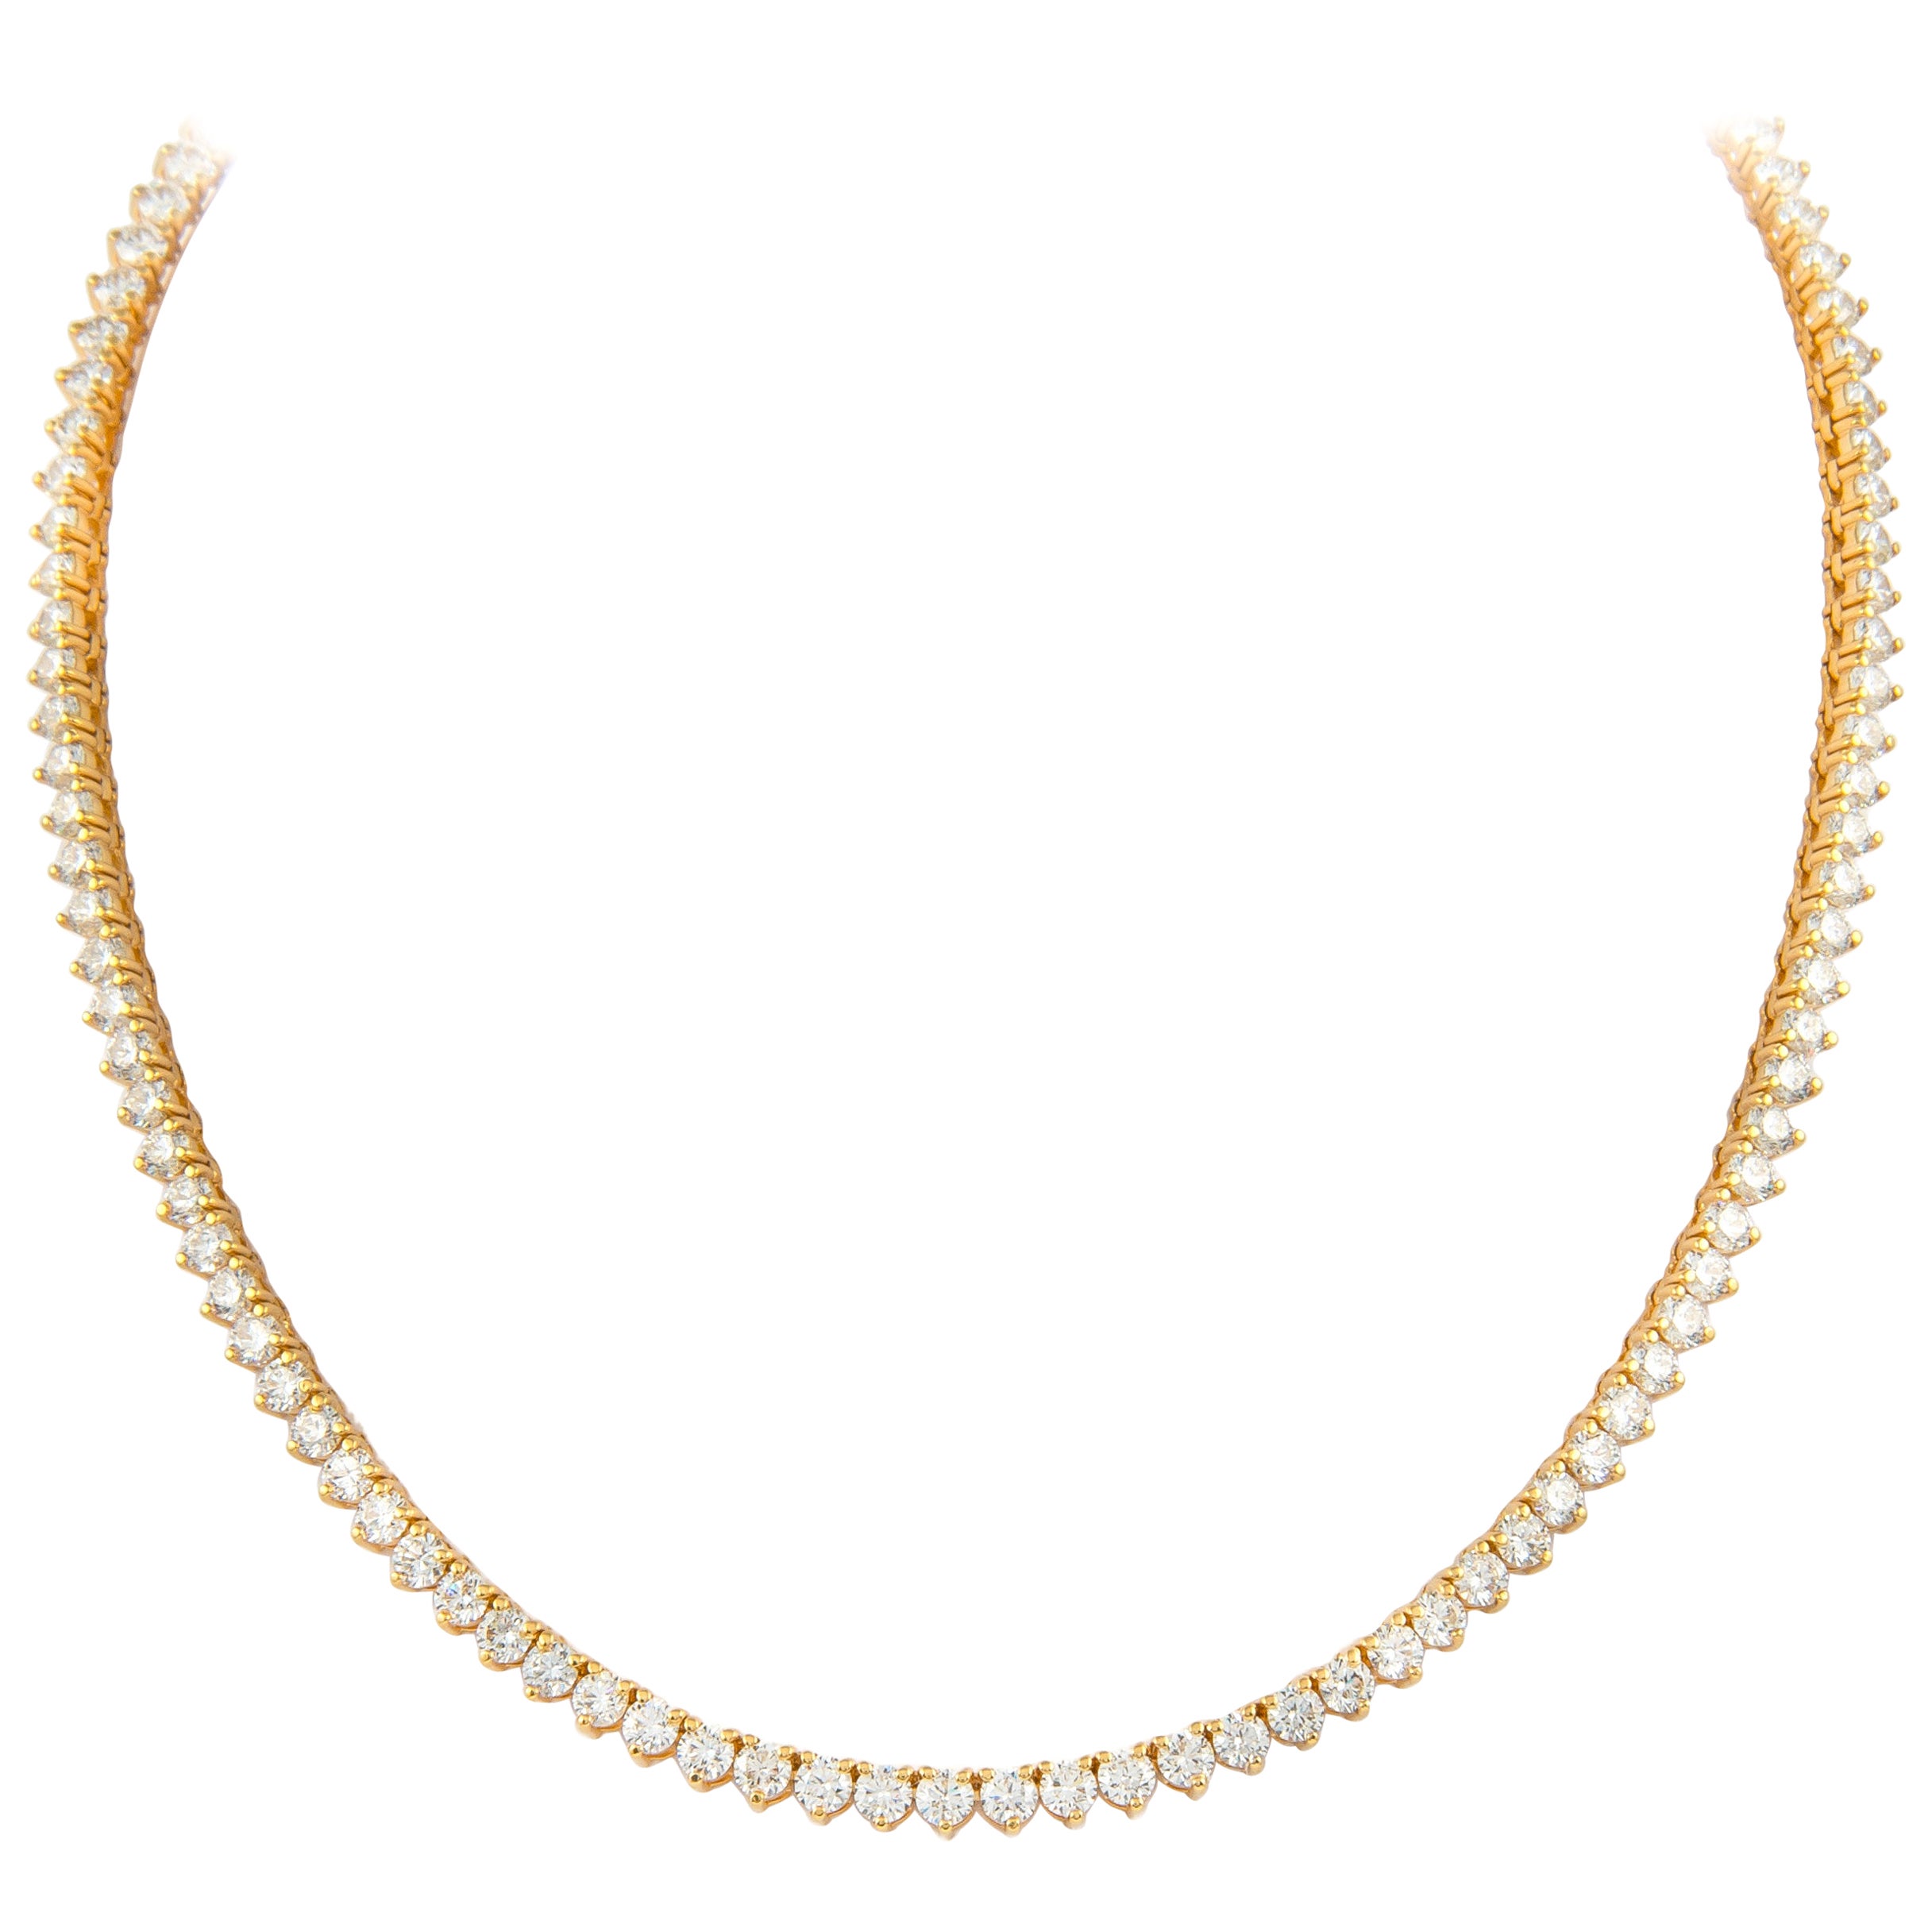 Alexander 16.25 Carat Diamond Tennis Necklace 18k Yellow Gold 3-Prong Set